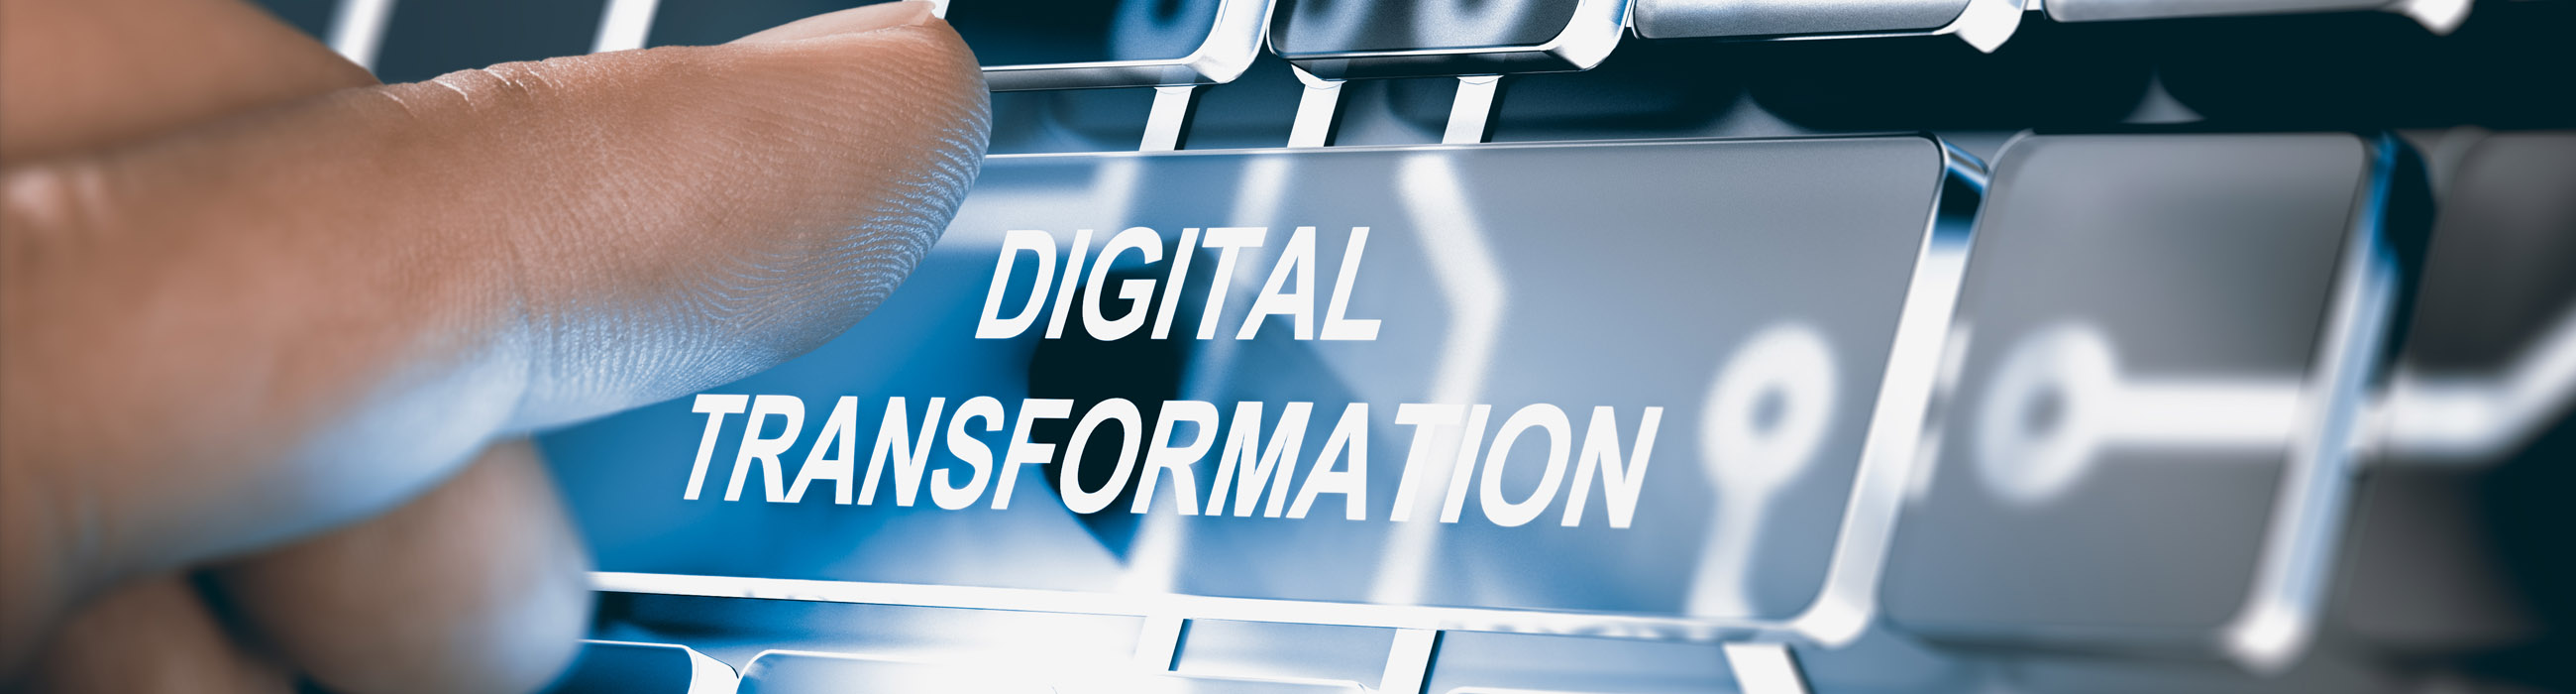 Digitalisierung: Tools zur Automatisierung und Digitalisierung zur Prozessverbesserung